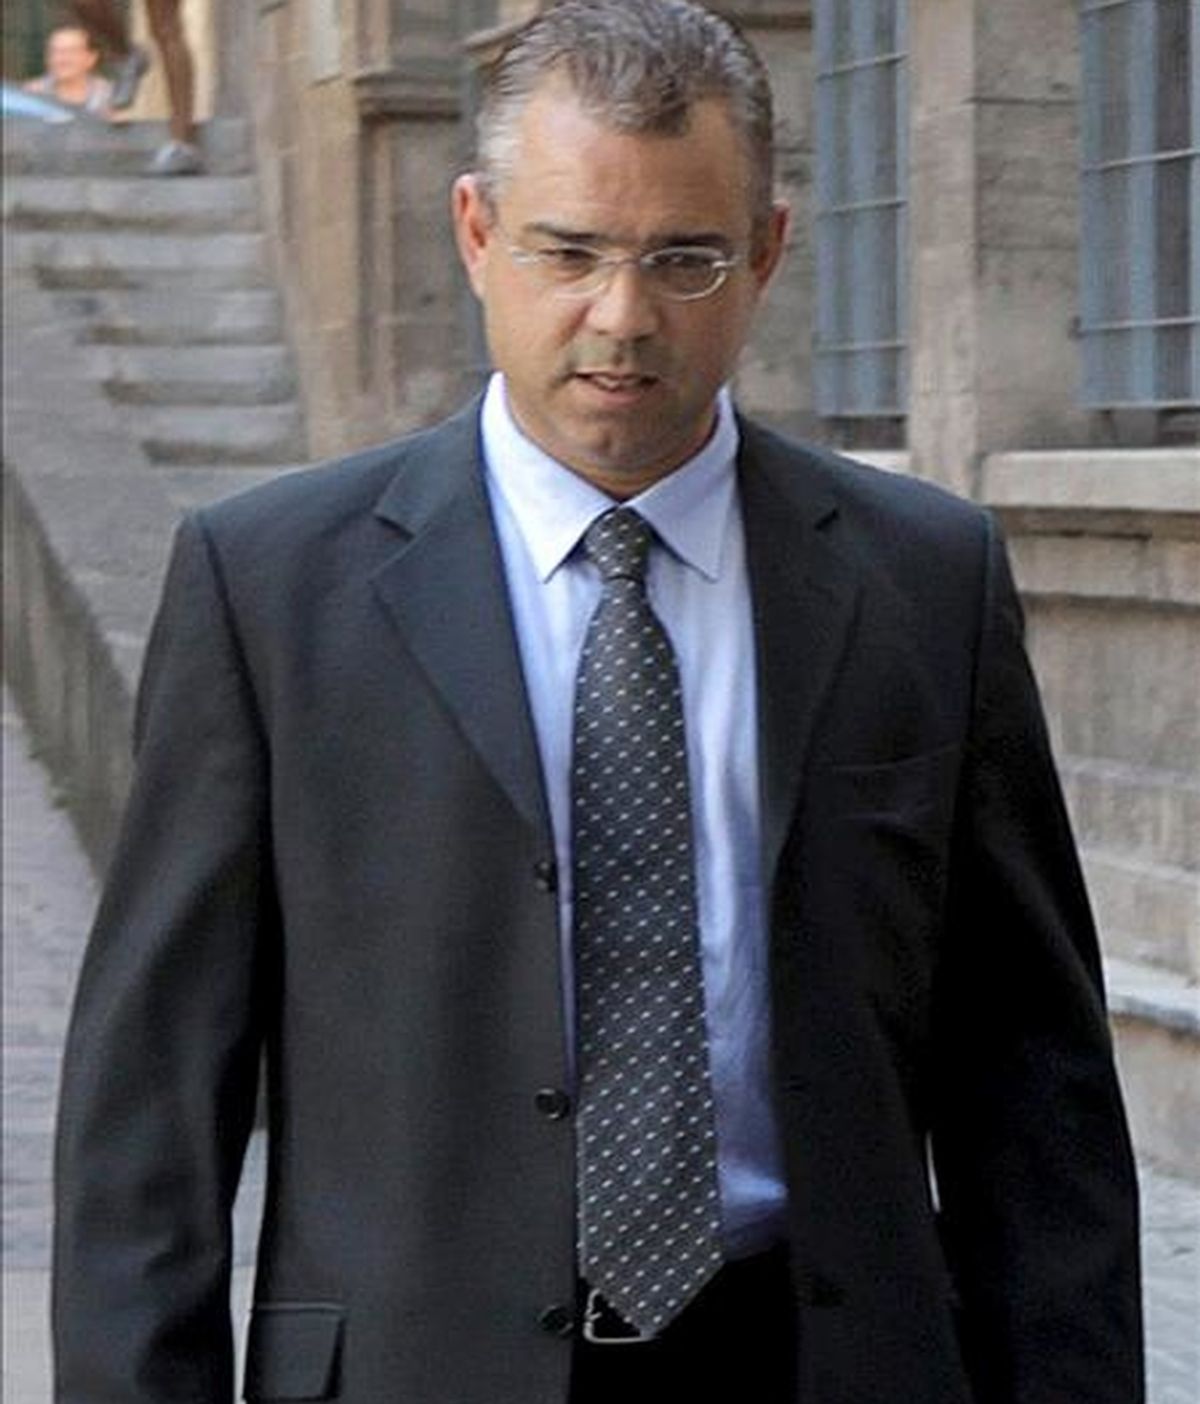 El ex conseller insular de Economía y ex presidente de UM, Miquel Ángel Flaquer, a su llegada a los juzgados de la capital balear para declarar como imputado en el caso "Can Domenge". EFE